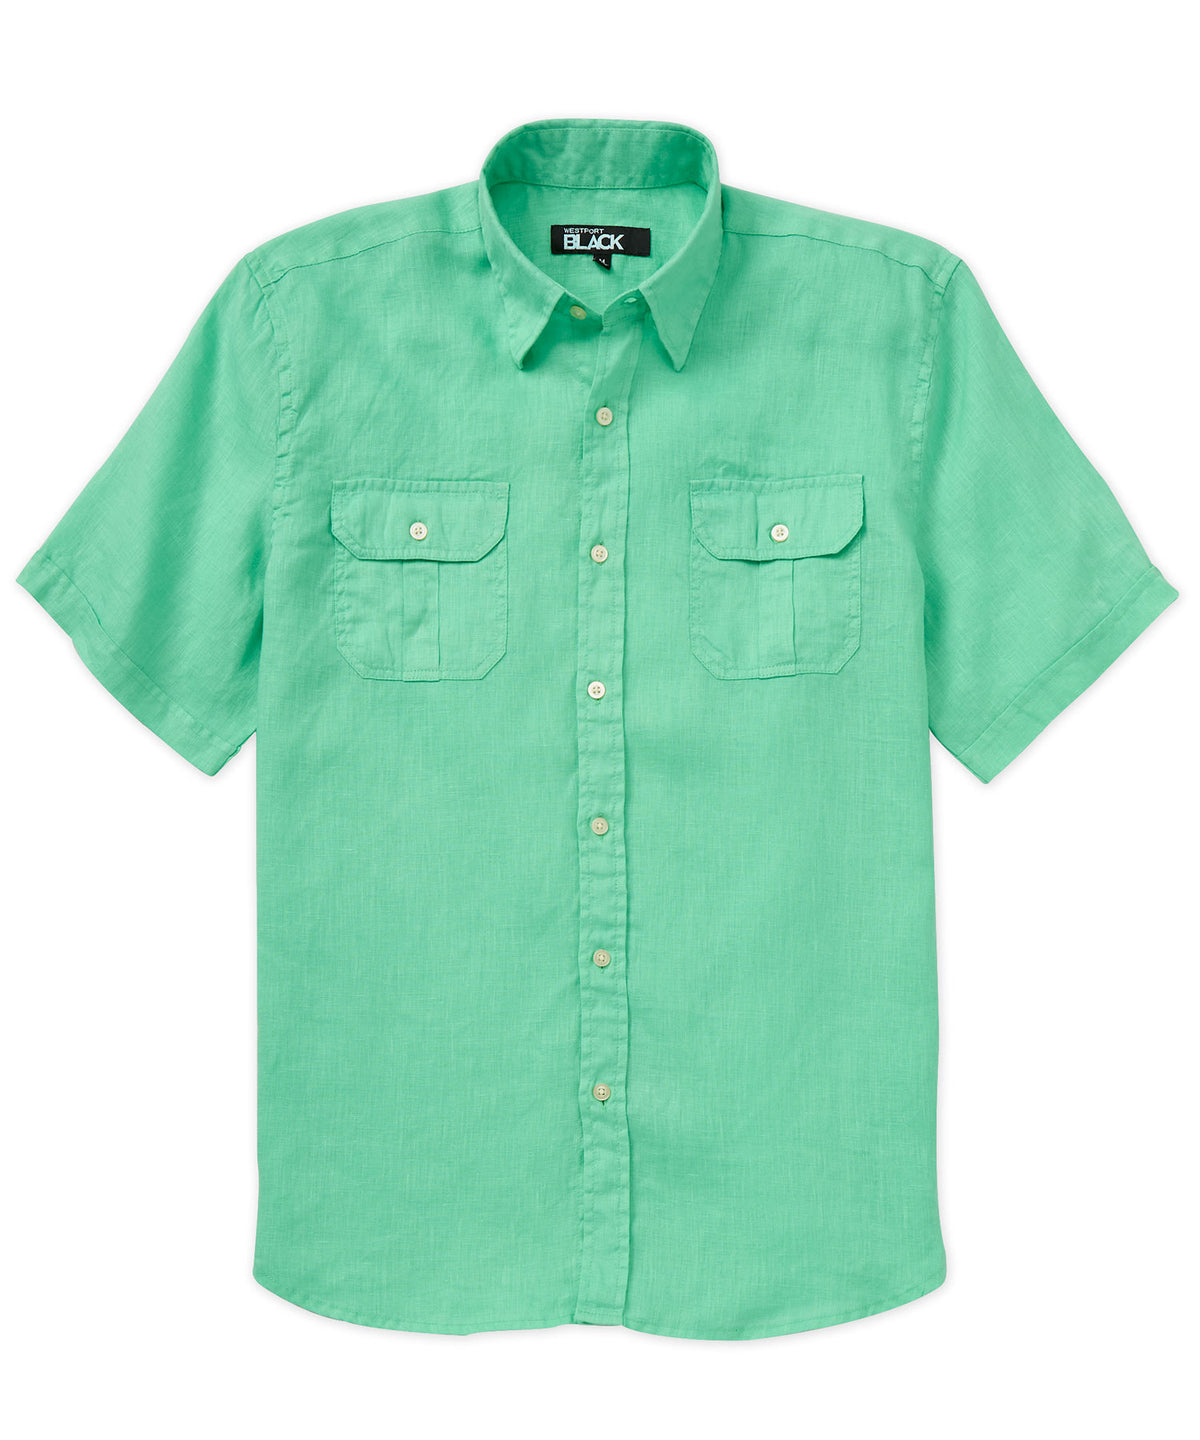 Westport Black Short Sleeve Linen Button-Under Collar Safari Shirt, Men's Big & Tall